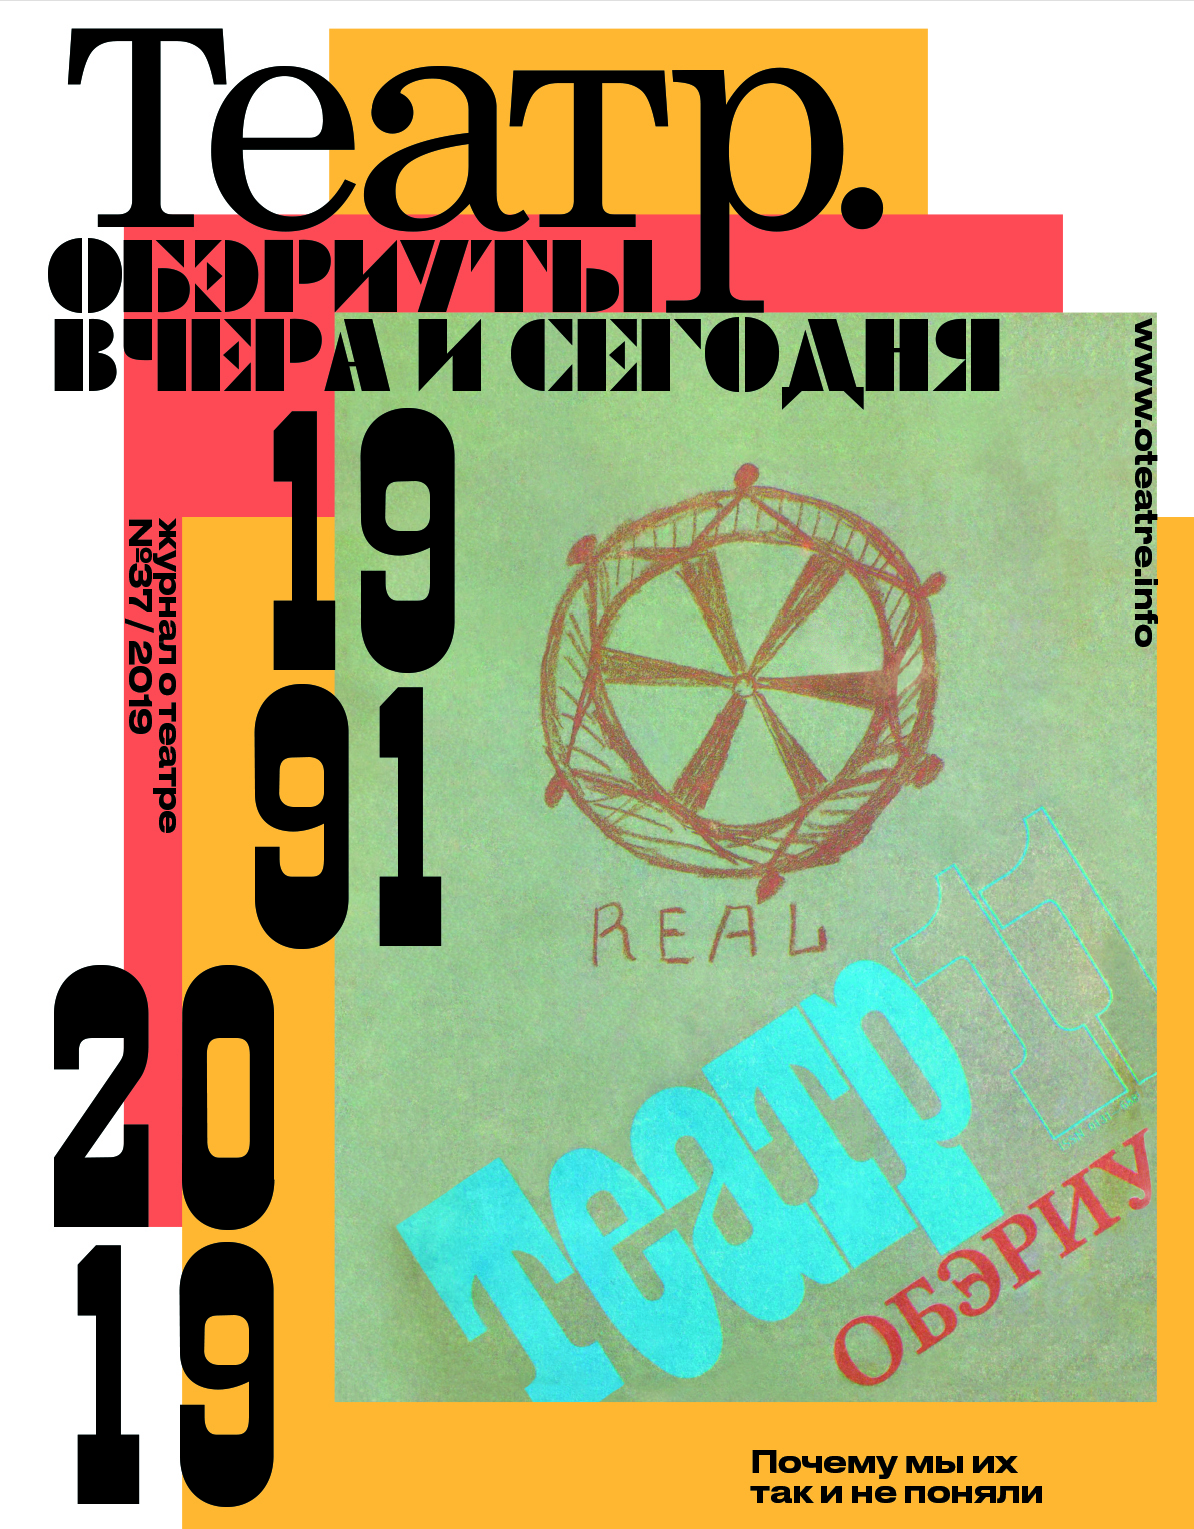 Обложка обэриутского номера журнала ТЕАТР.